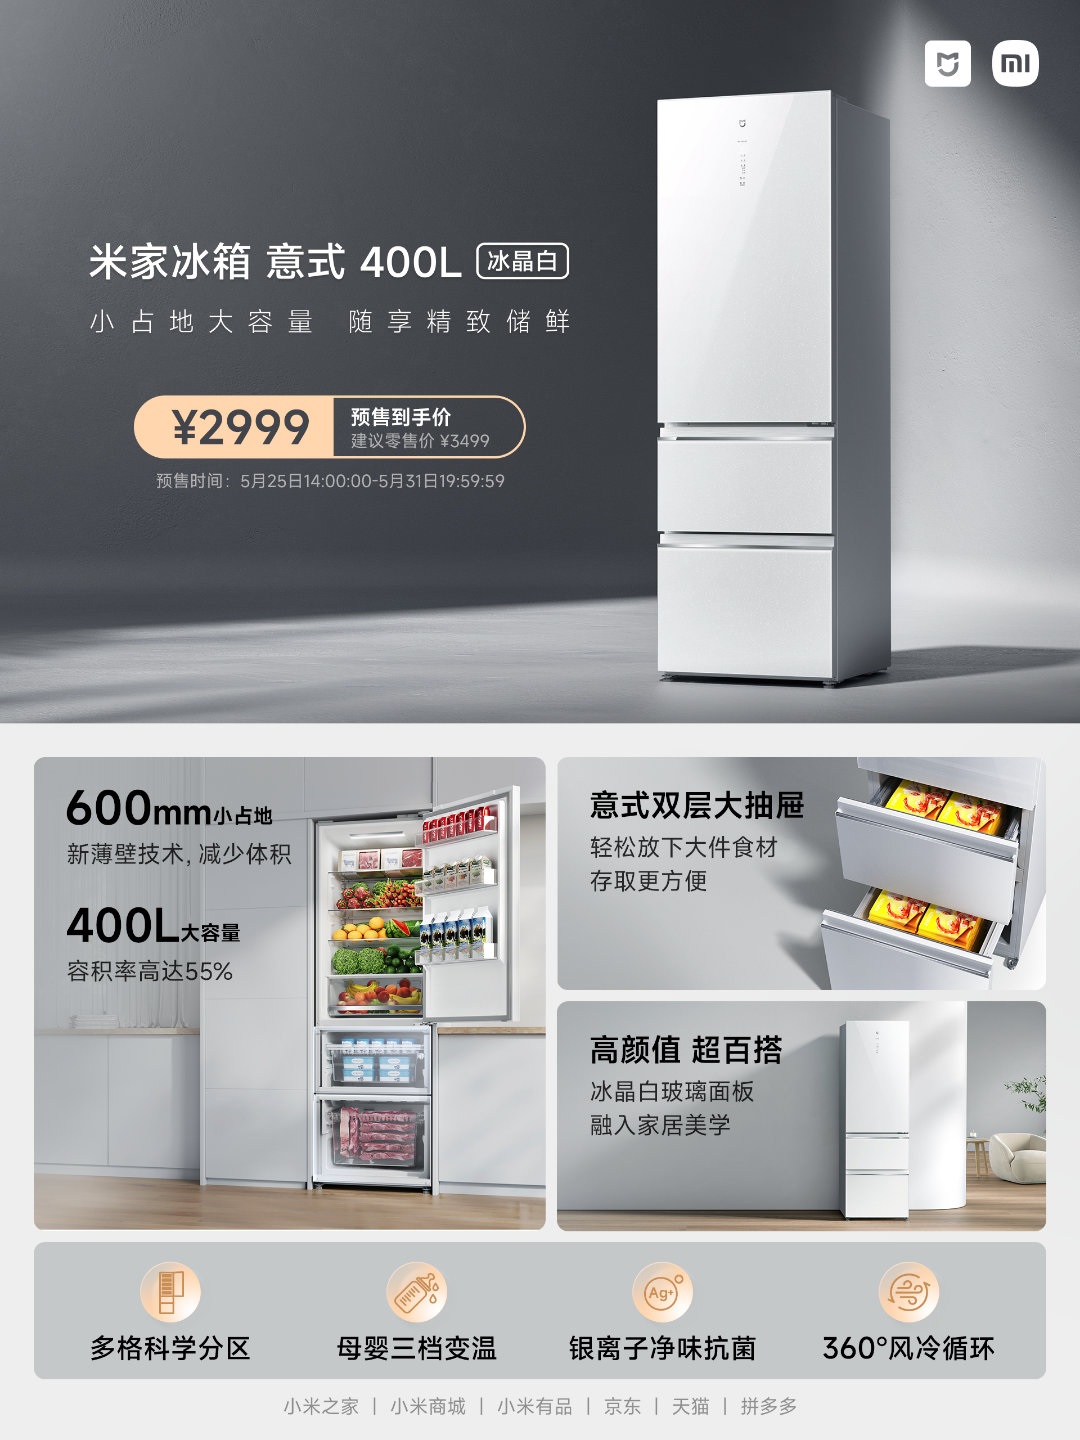 Xiaomi представила компактний 400 л холодильник в італійському стилі